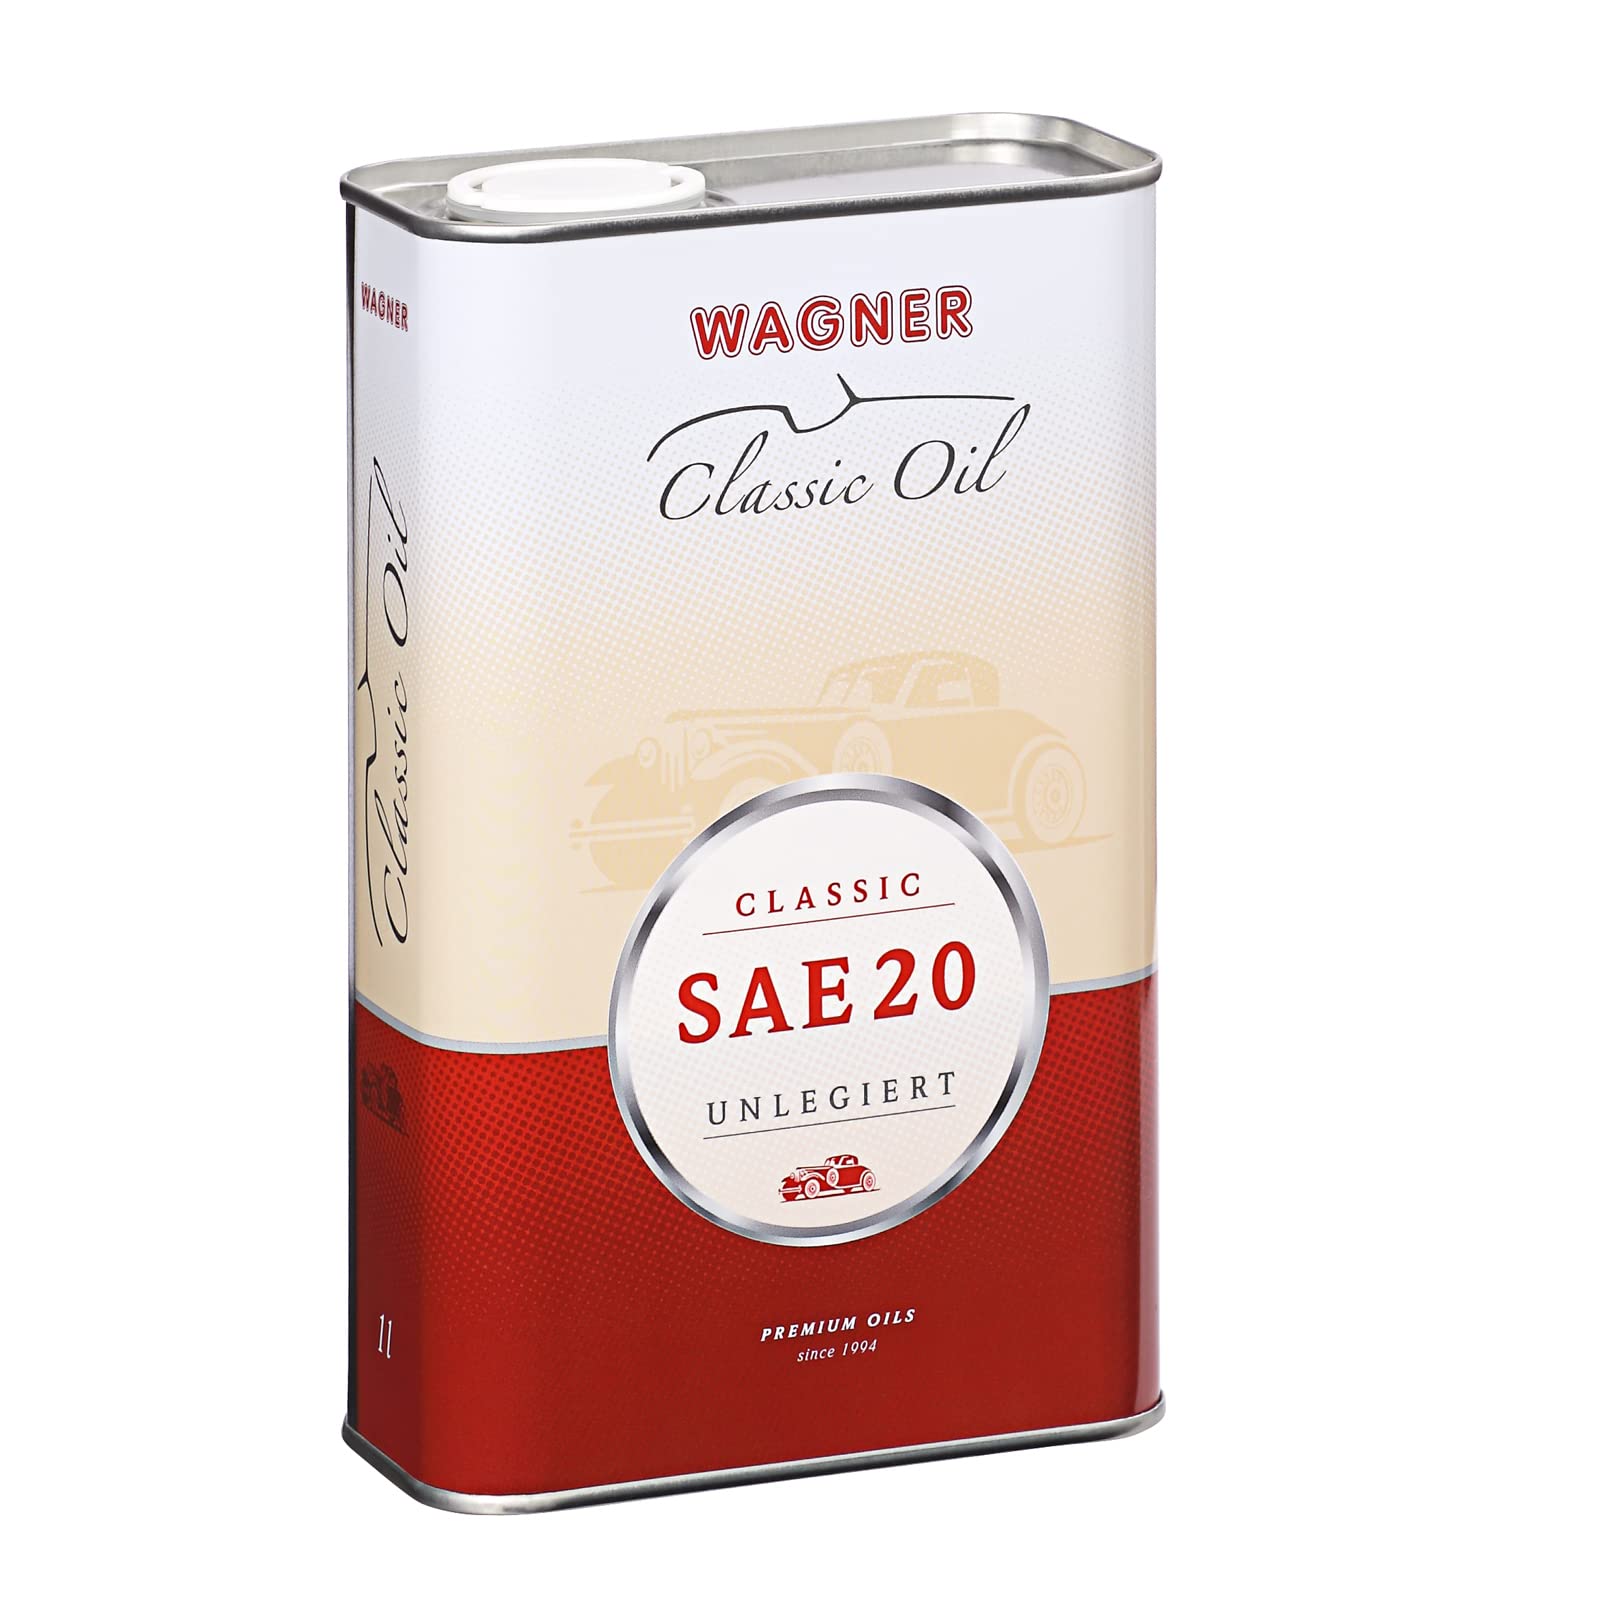 WAGNER Classic Motorenöl SAE 20 / SAE 20W/20, unlegiert - 420001-1 Liter von WAGNER Spezialschmierstoffe GmbH & Co. KG